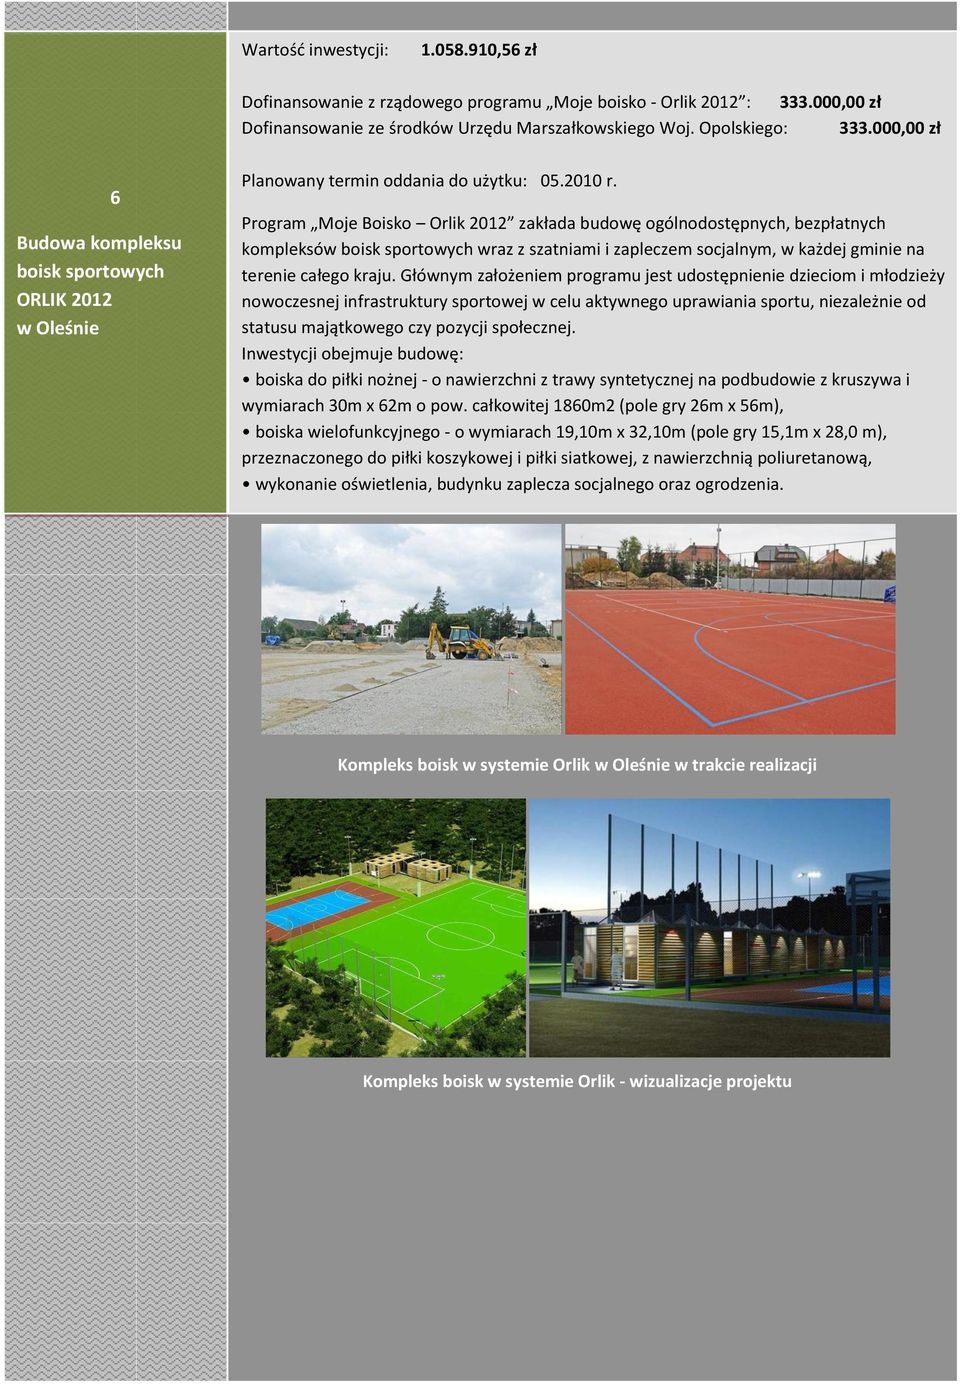 Program Moje Boisko Orlik 2012 zakłada budowę ogólnodostępnych, bezpłatnych kompleksów boisk sportowych wraz z szatniami i zapleczem socjalnym, w każdej gminie na terenie całego kraju.